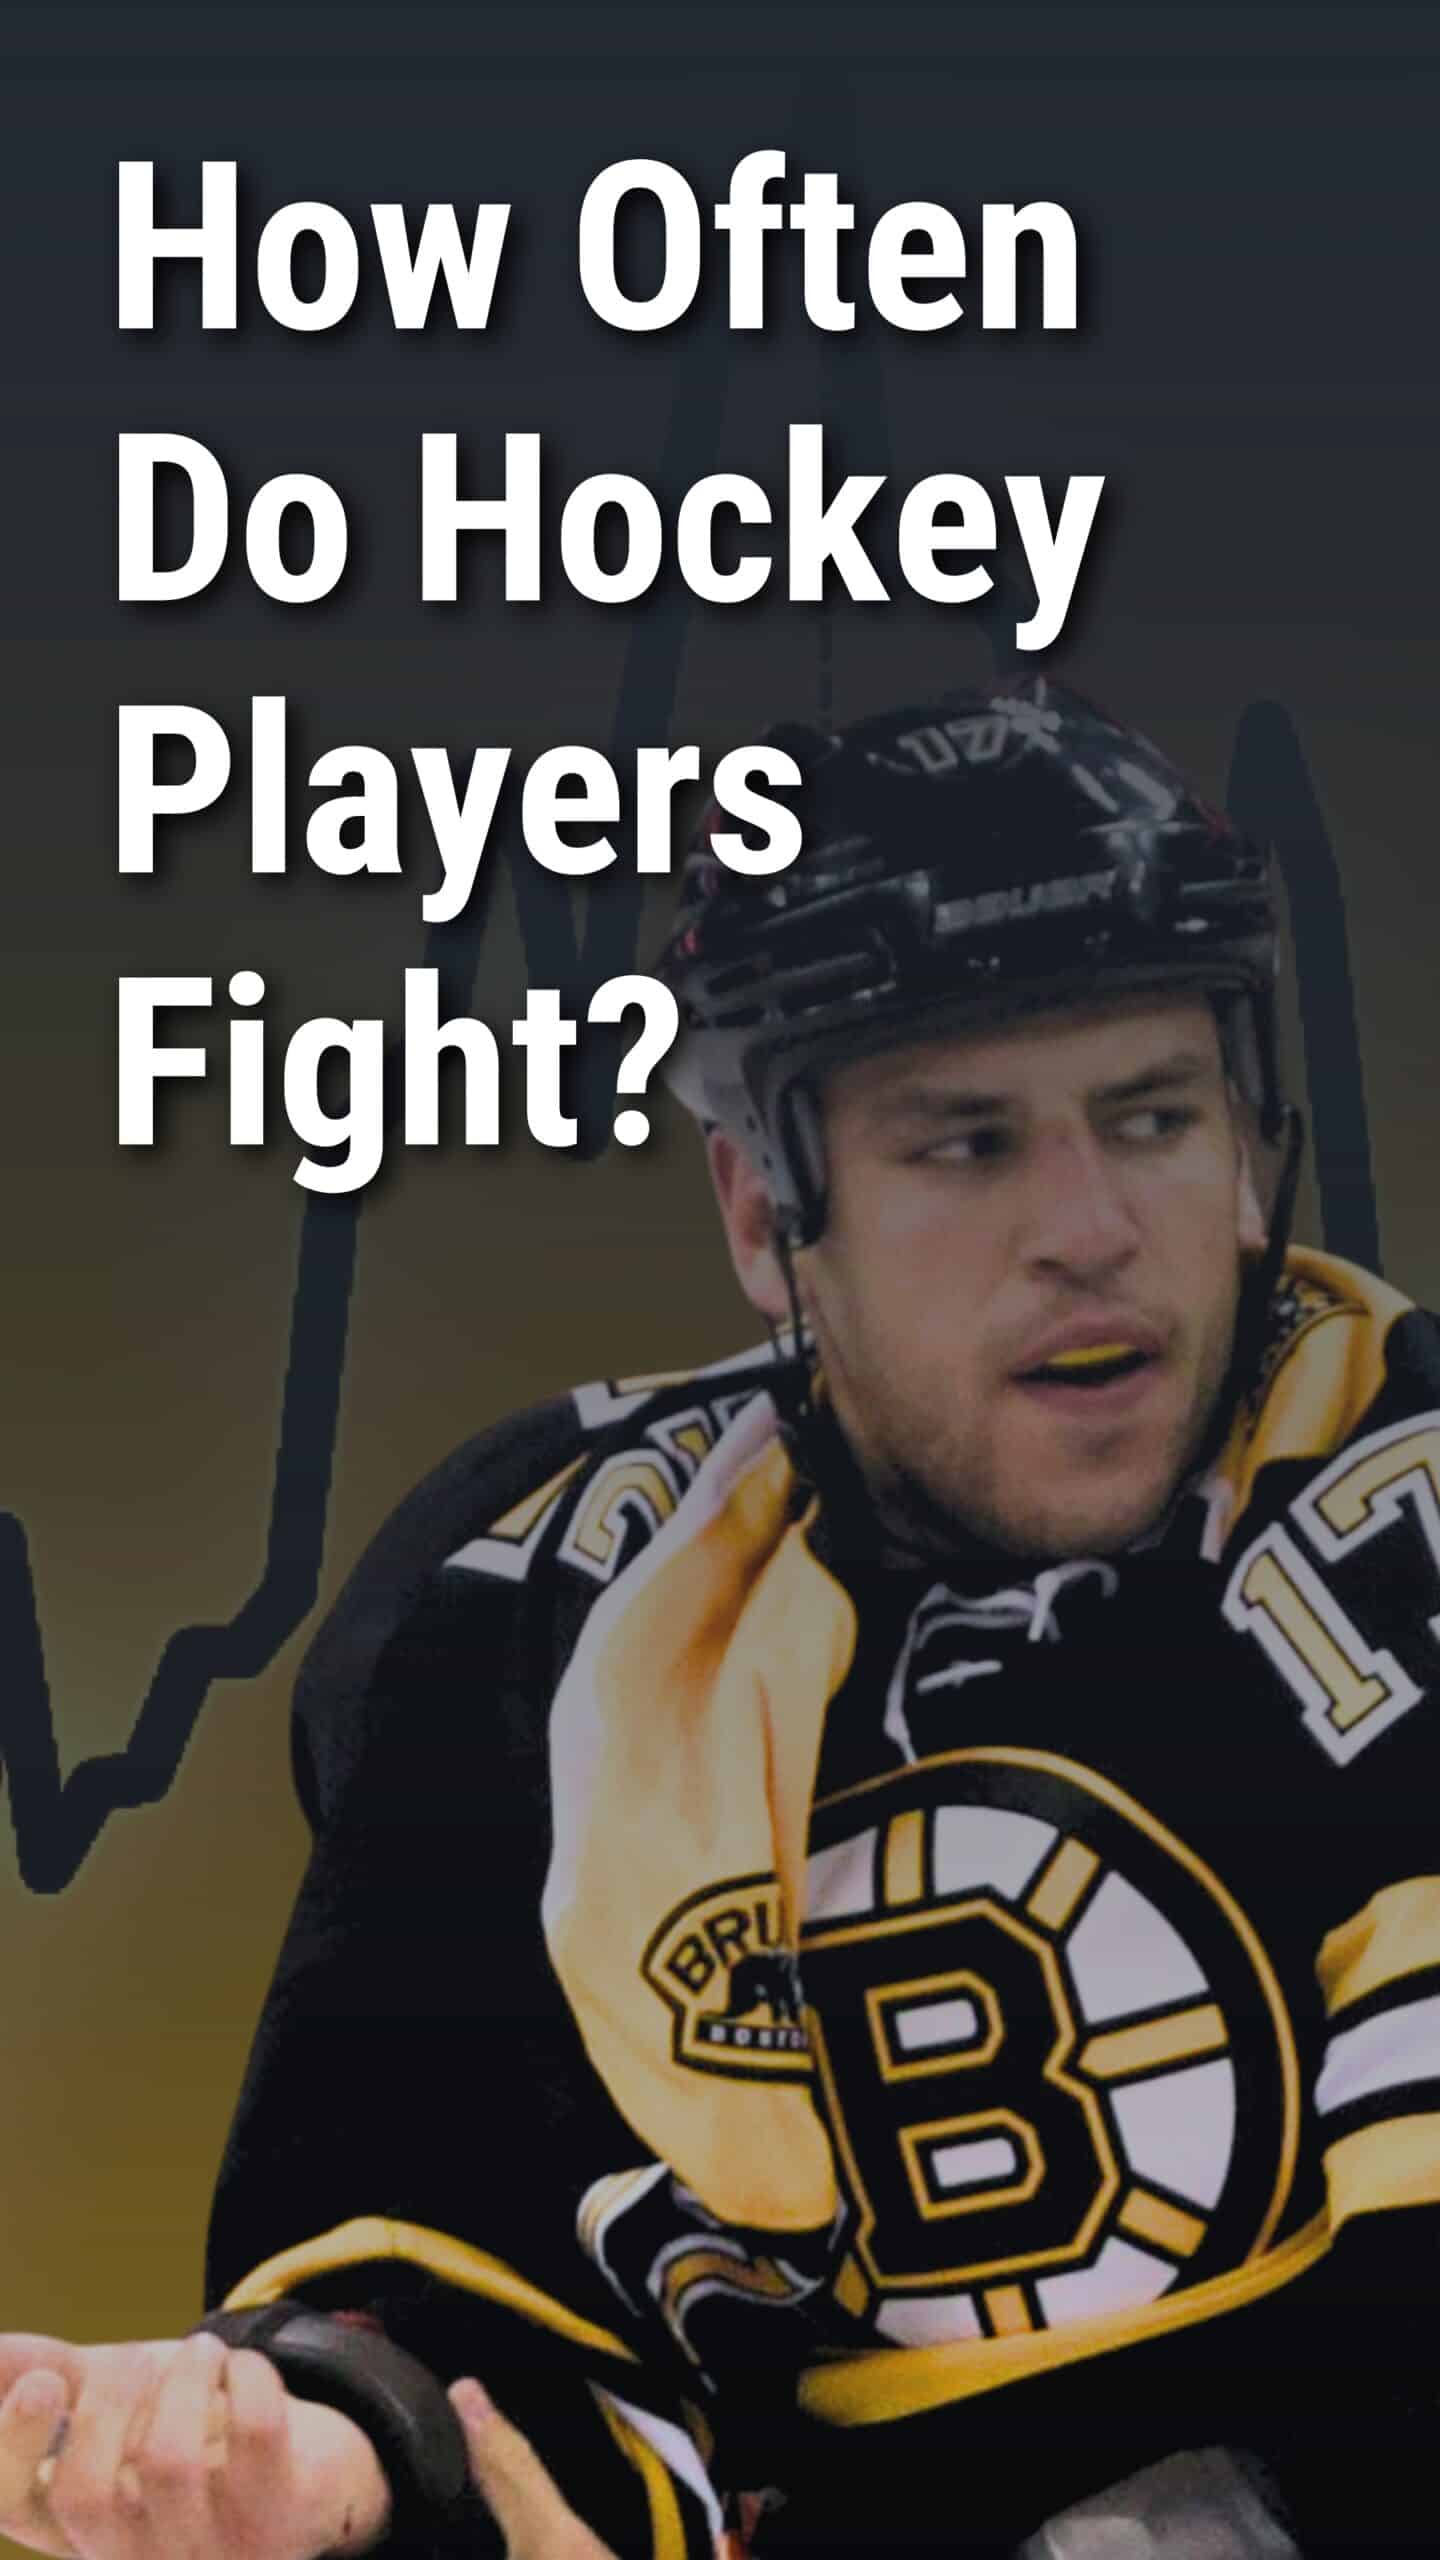 How Often Do Hockey Players Fight?